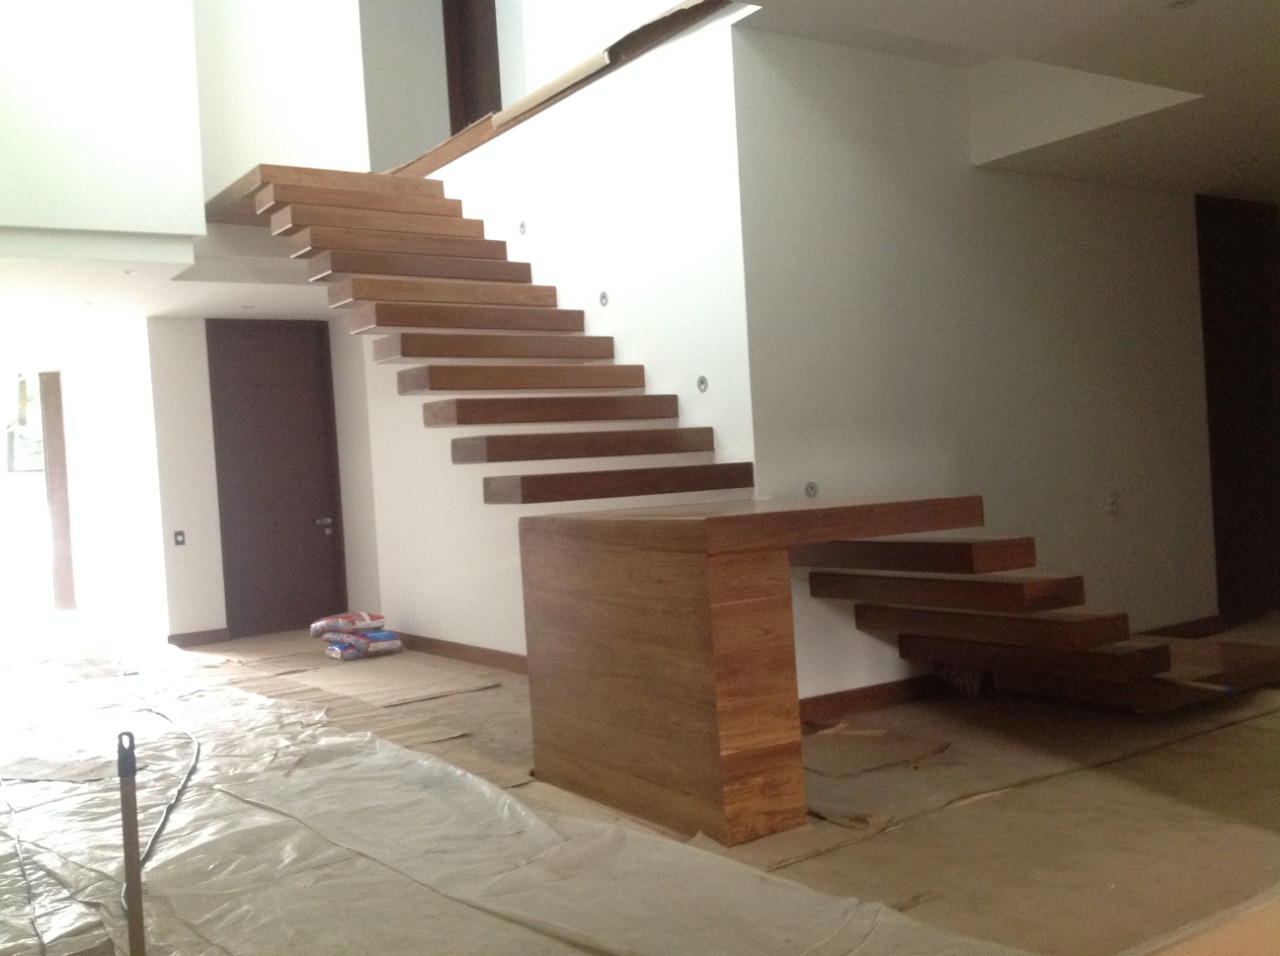 Ventas de escaleras de madera para interior